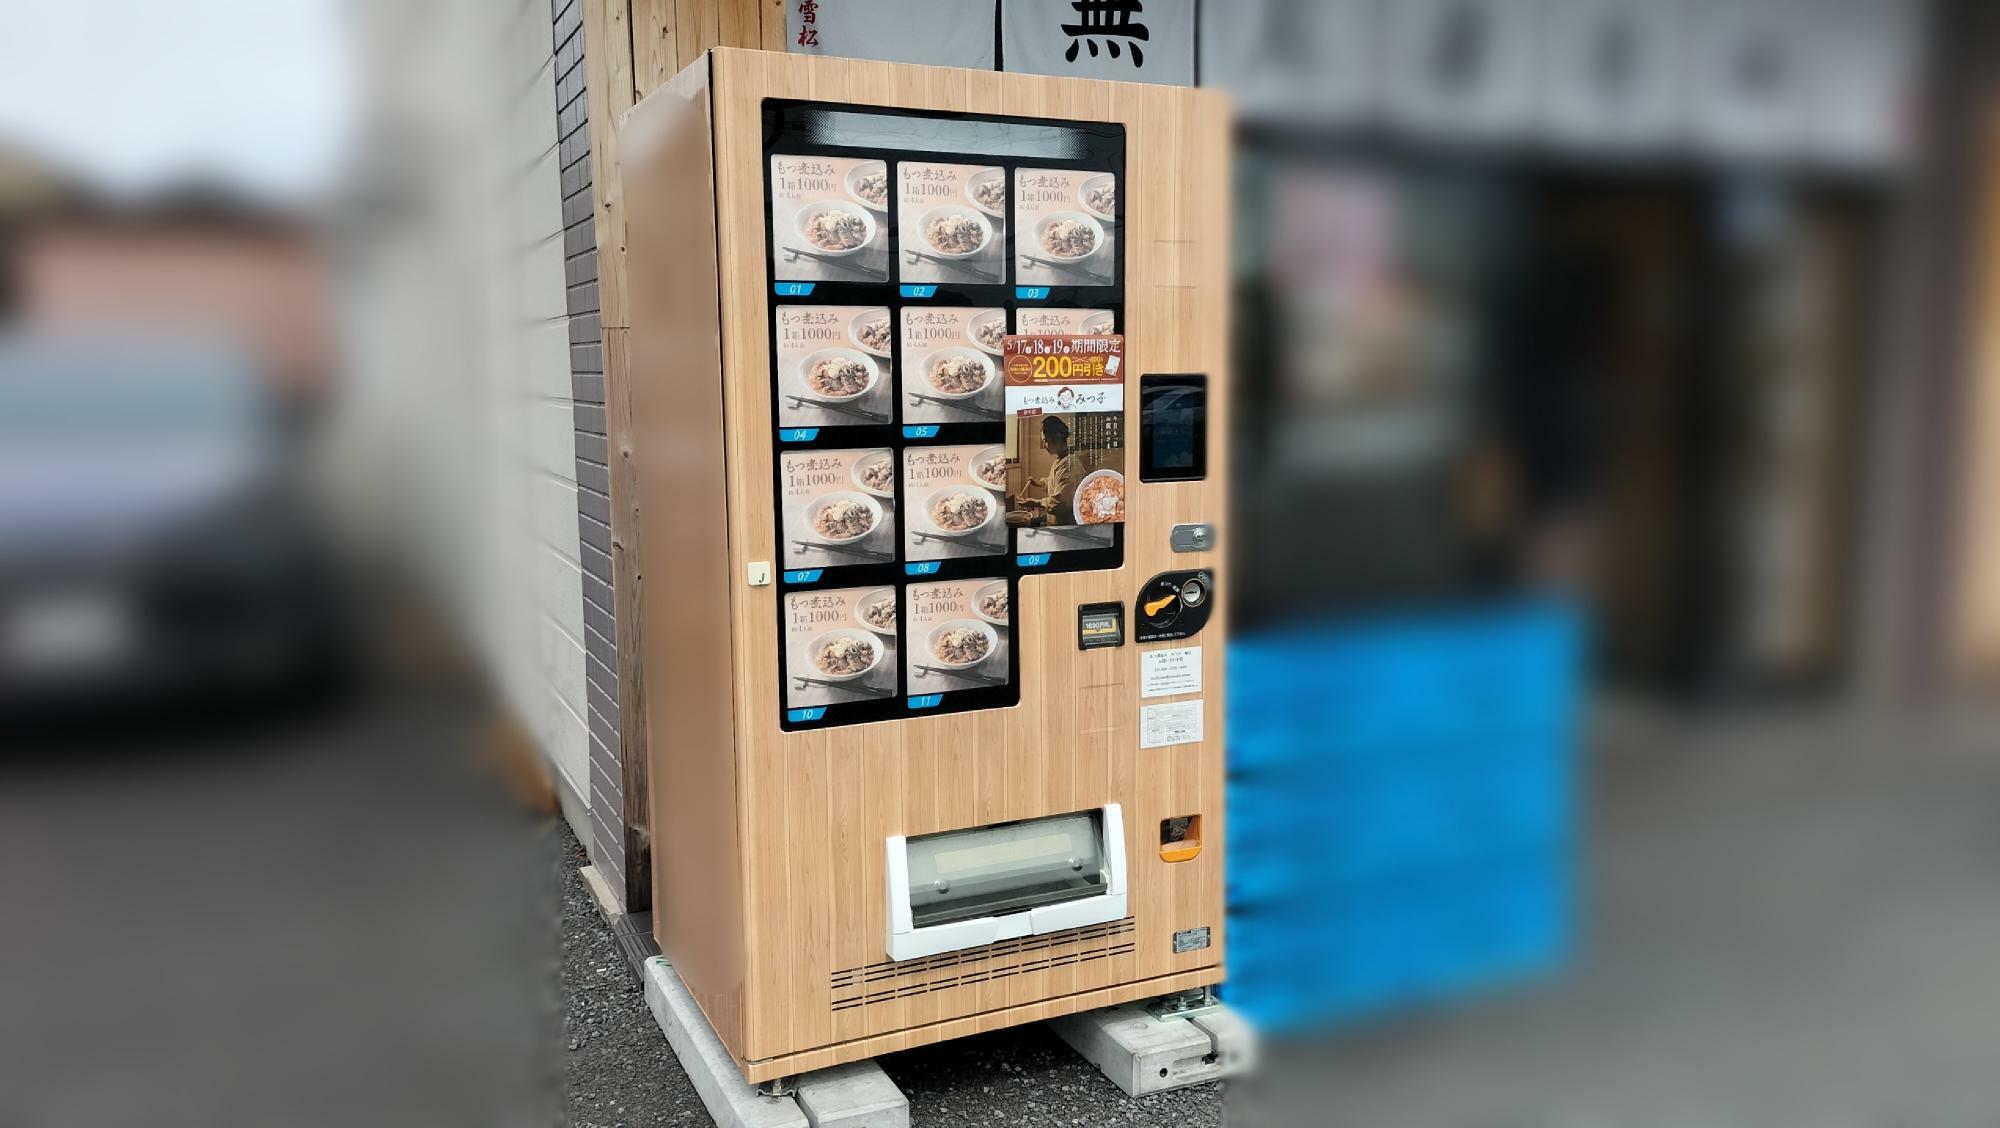 「もつ煮込み みつ子」の冷凍自動販売機